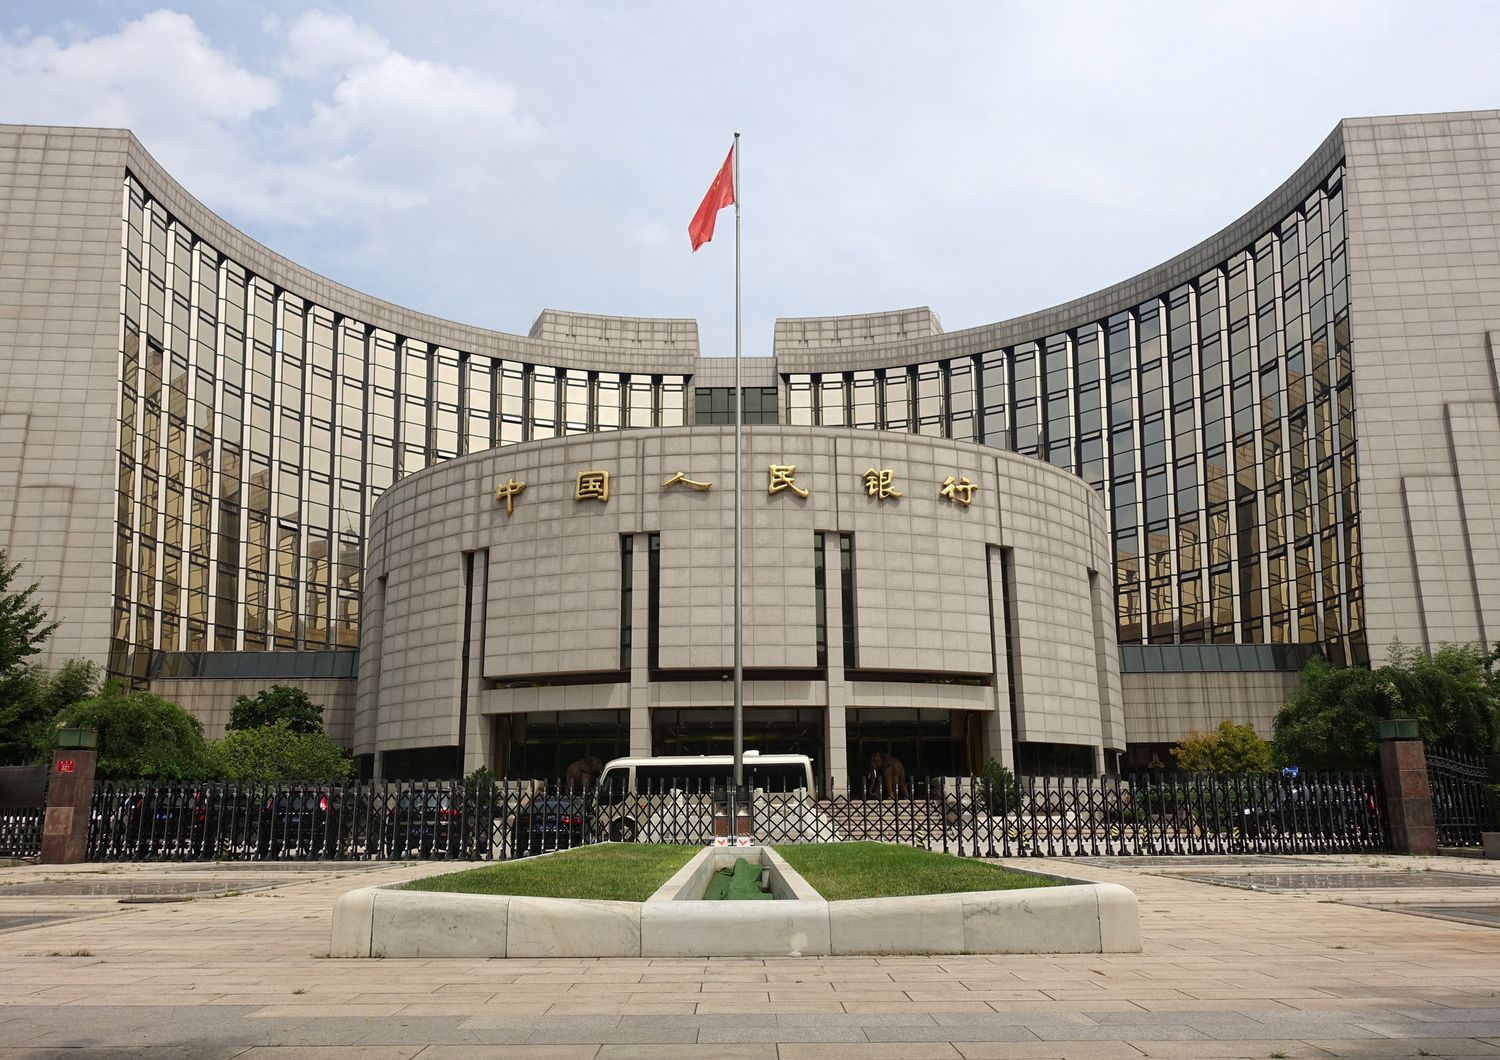 Il quartier generale della People's Bank of China